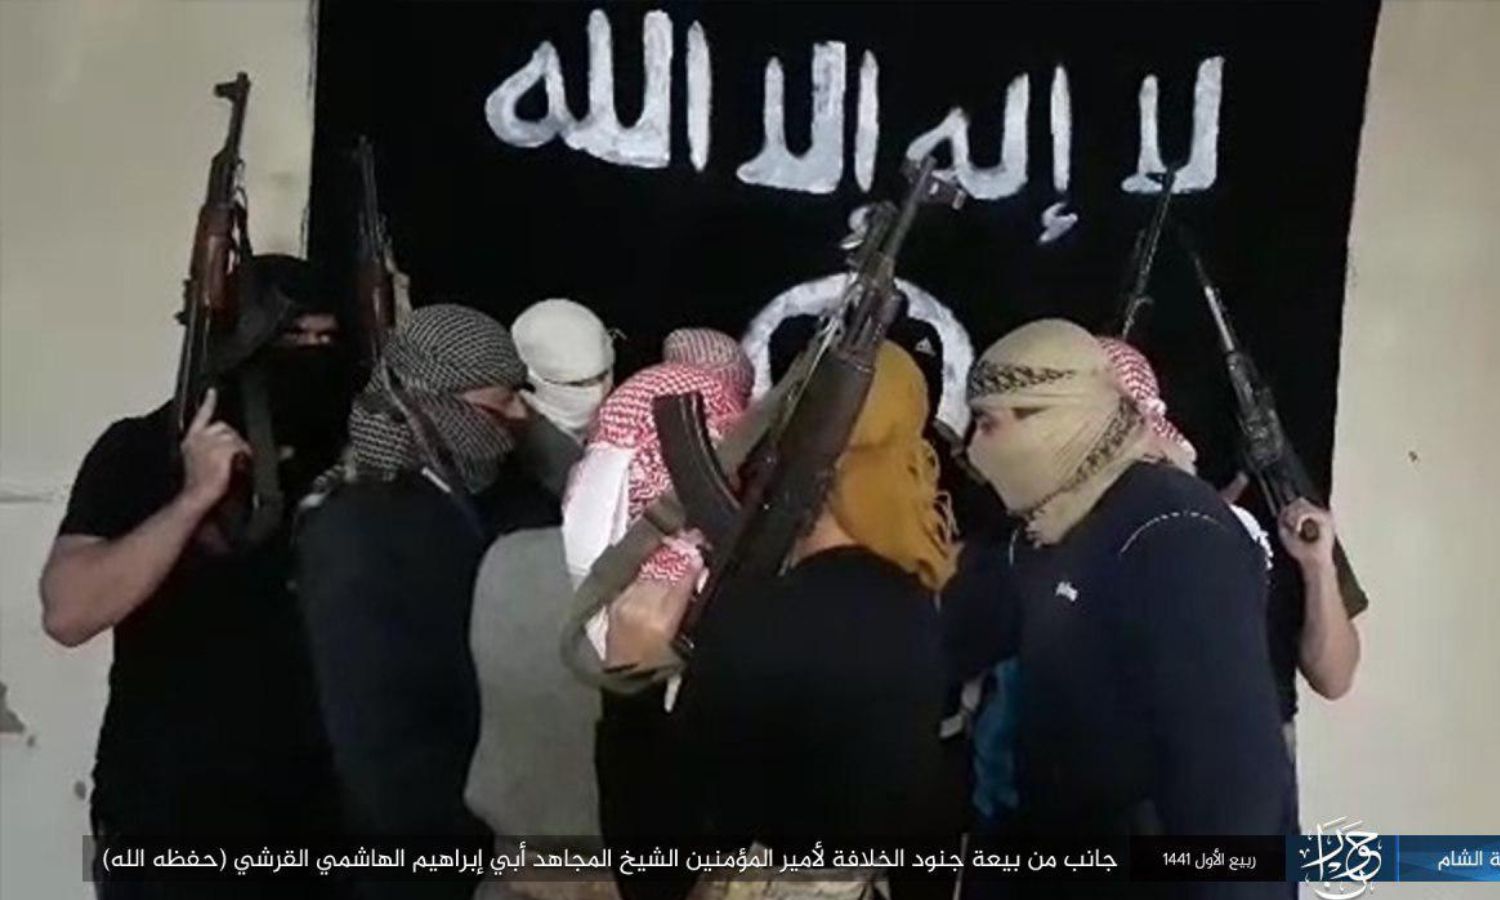 بيعة مقاتلي تنظيم الدولة الاسلامية للزعيم الجديد ابو ابراهيم الهاشمي في سوريا تشرين الثاني 2019 (أعماق)